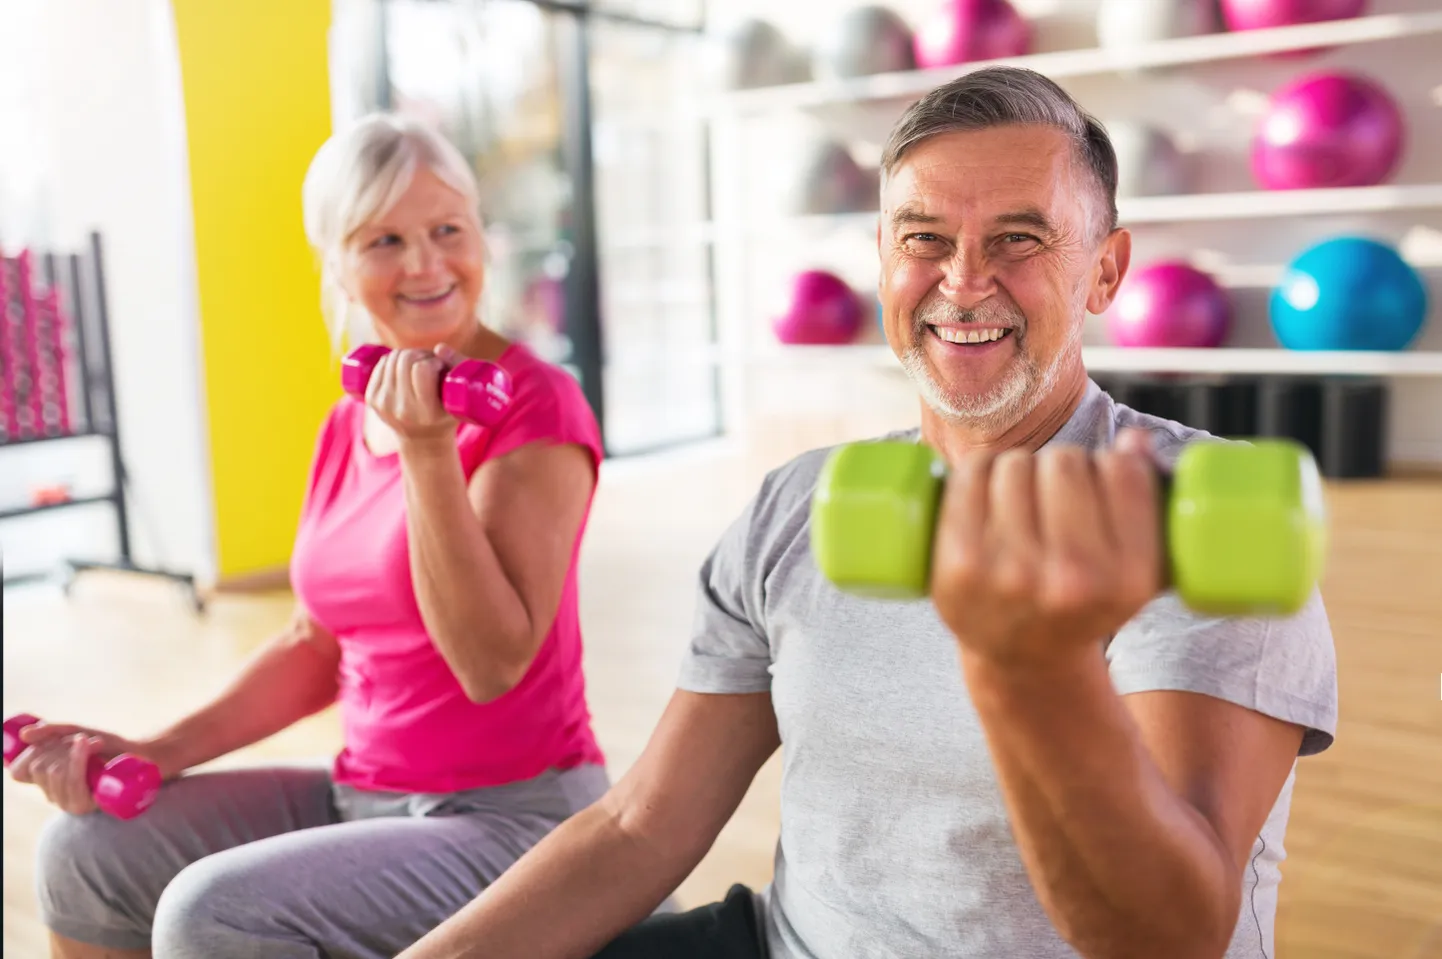 Rimi uuringust selgus, et vanemad inimesed on füüsiliselt aktiivsemad kui noored.